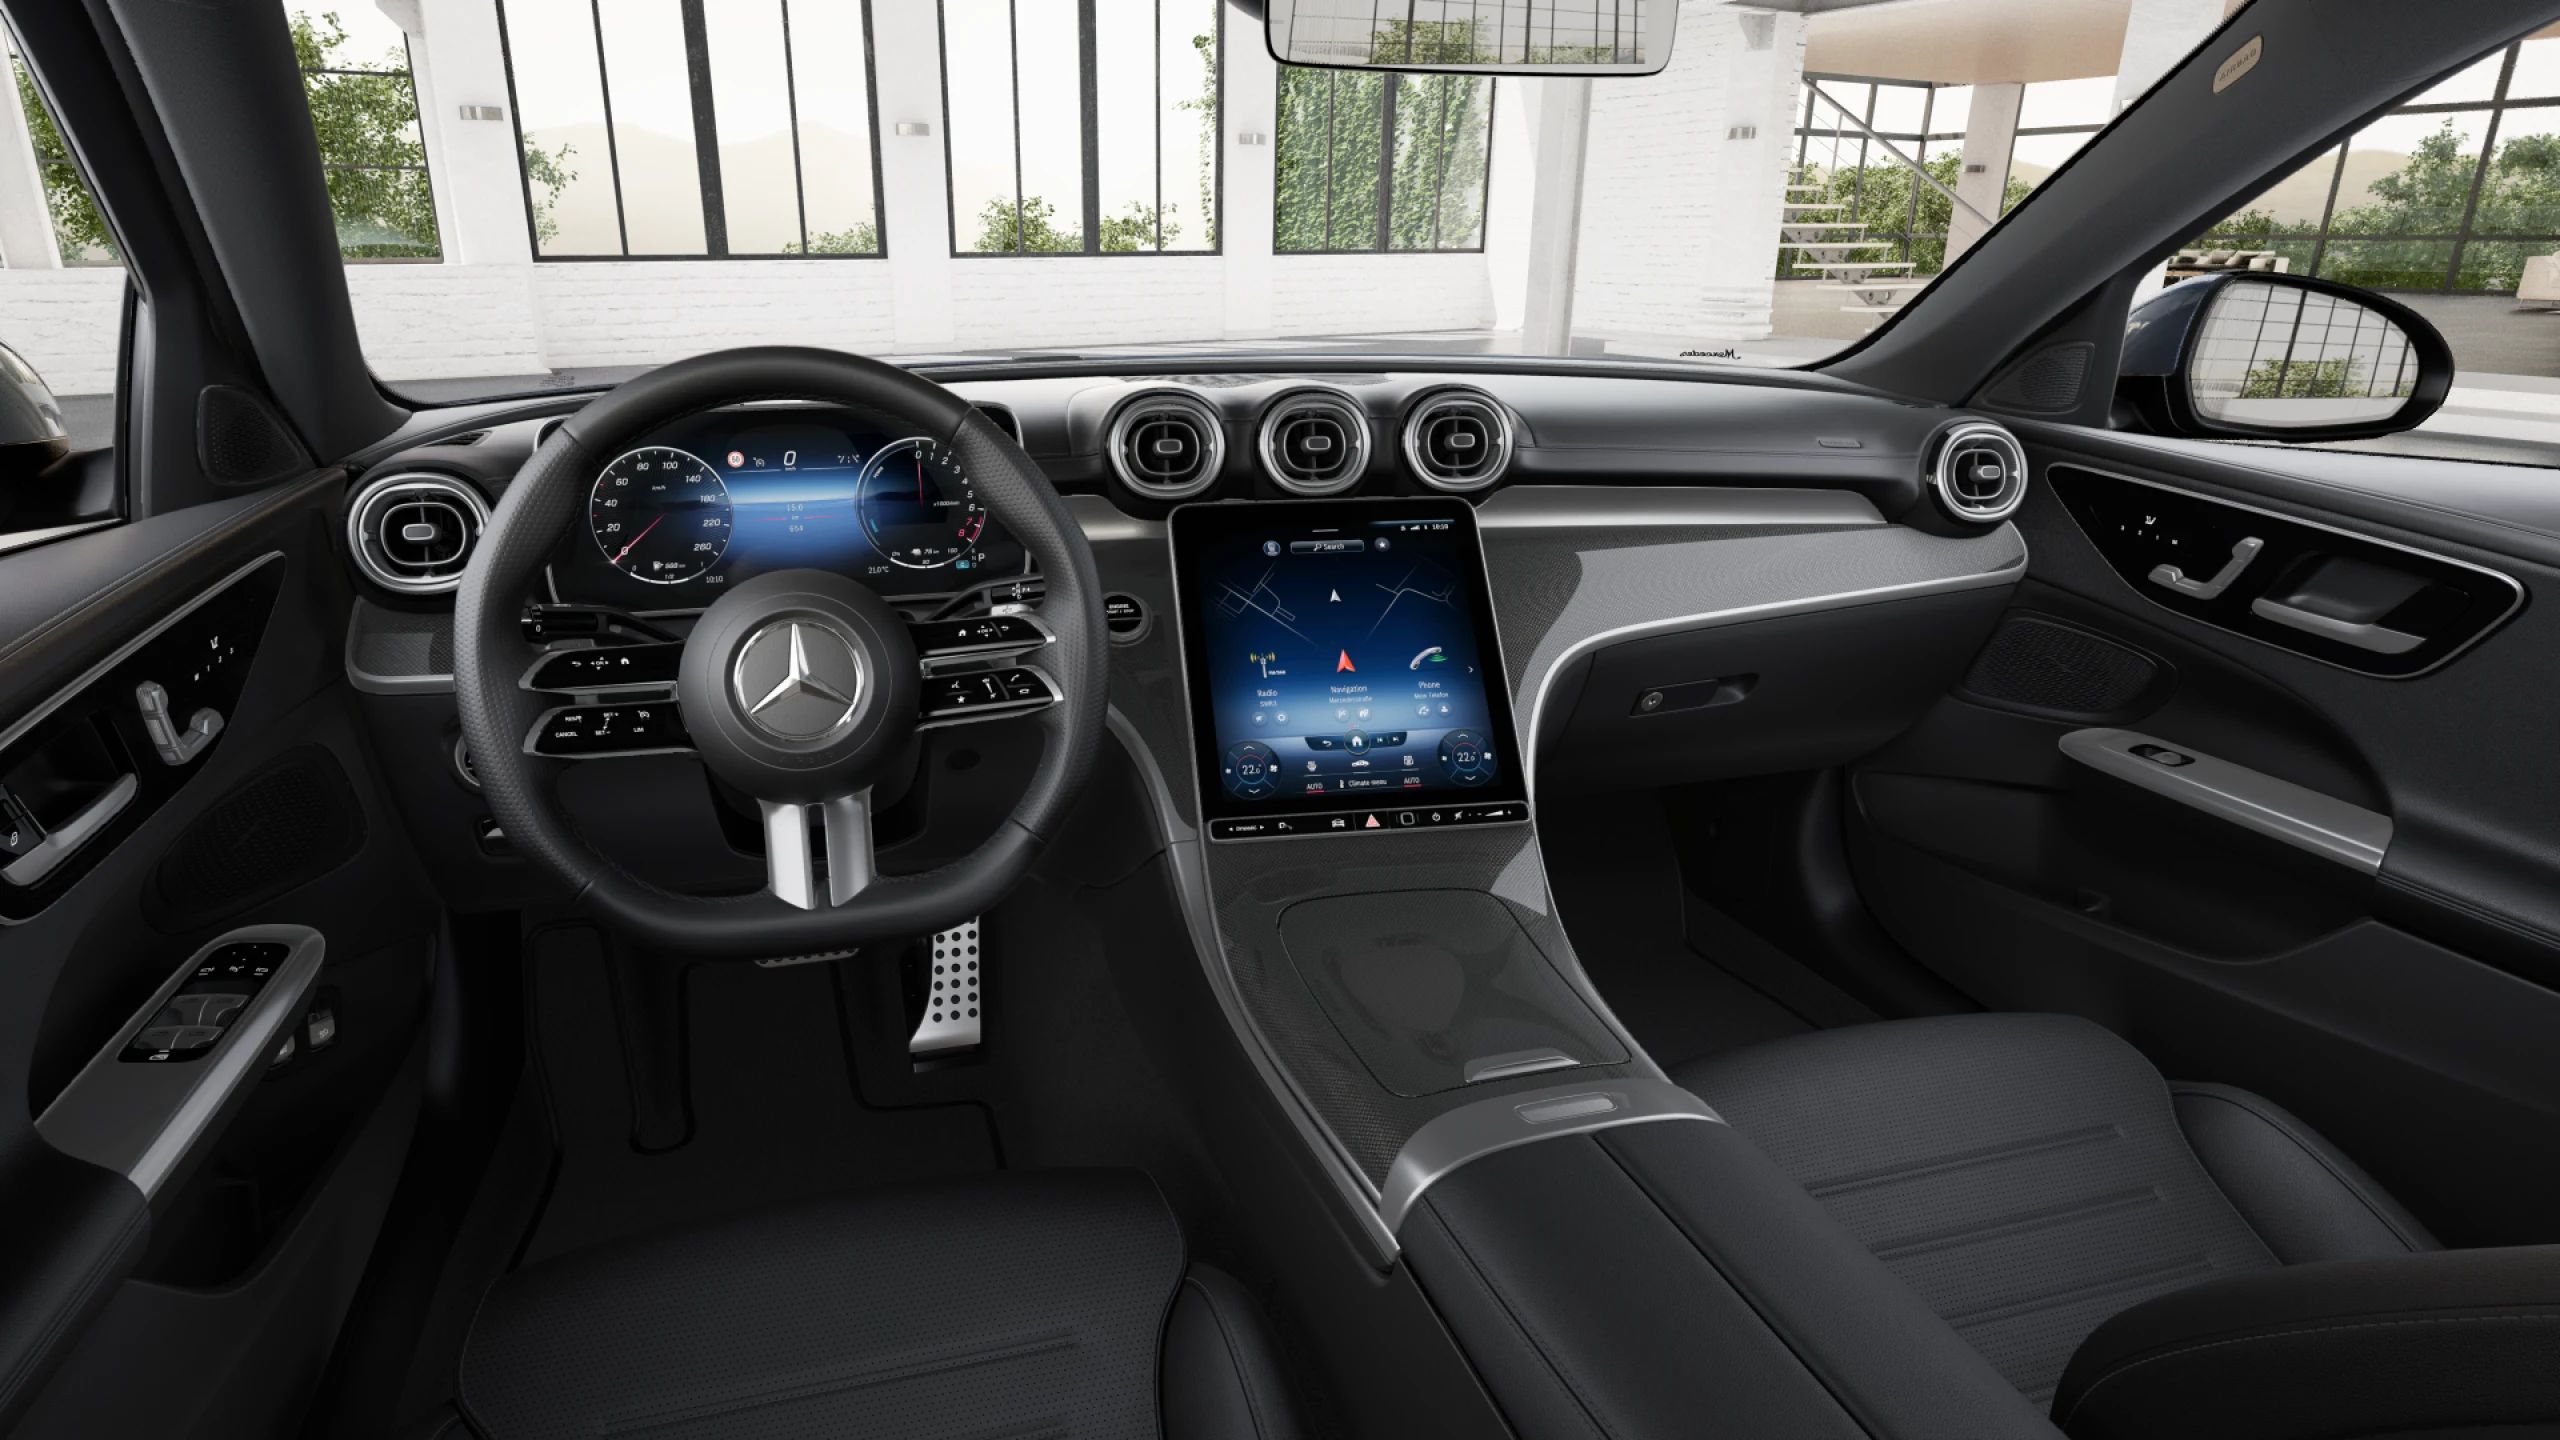 New Car Offer - Mercedes-Benz C-Class Saloon